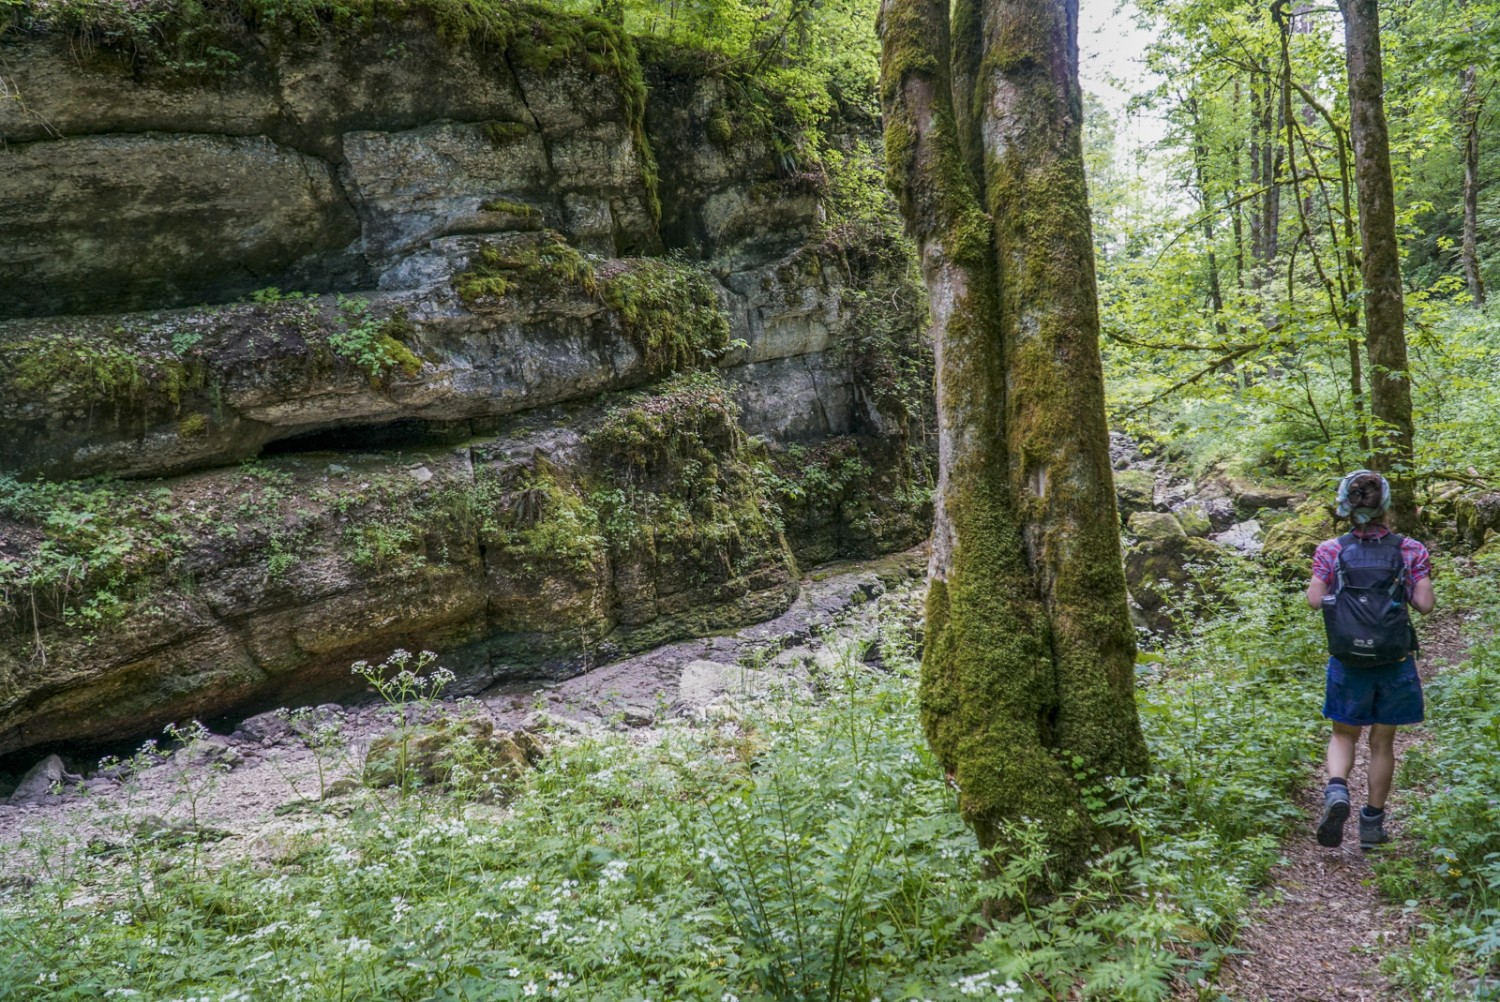 Typique de la randonnée dans la combe: ombres, parois rocheuses et lit du ruisseau à sec. Photo: Mia Hofmann